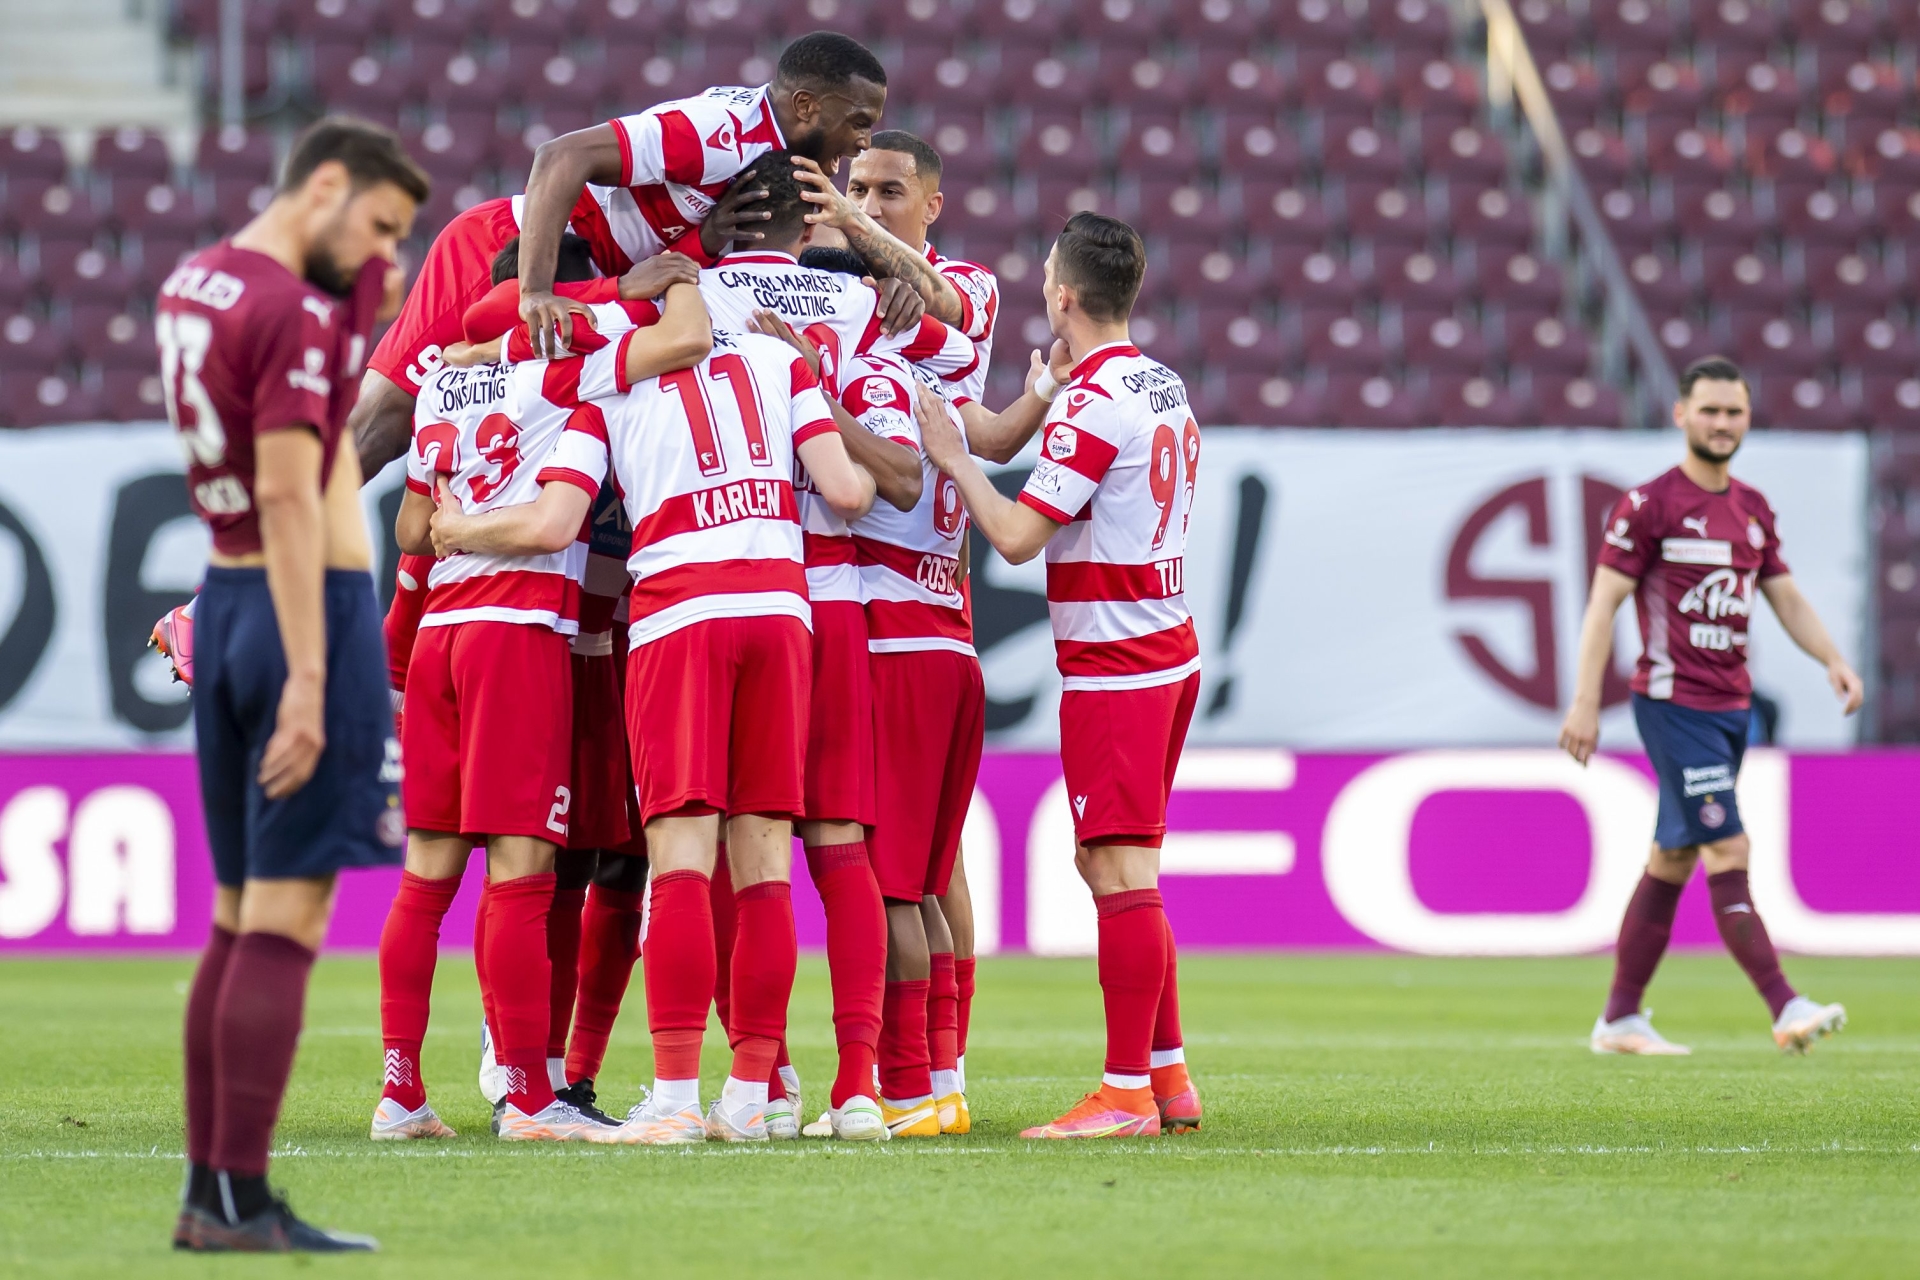 Les joueurs du FC Sion exultent après un but marqué lors du match contre le Servette FC le jeudi 22 avril au stade de Genève.